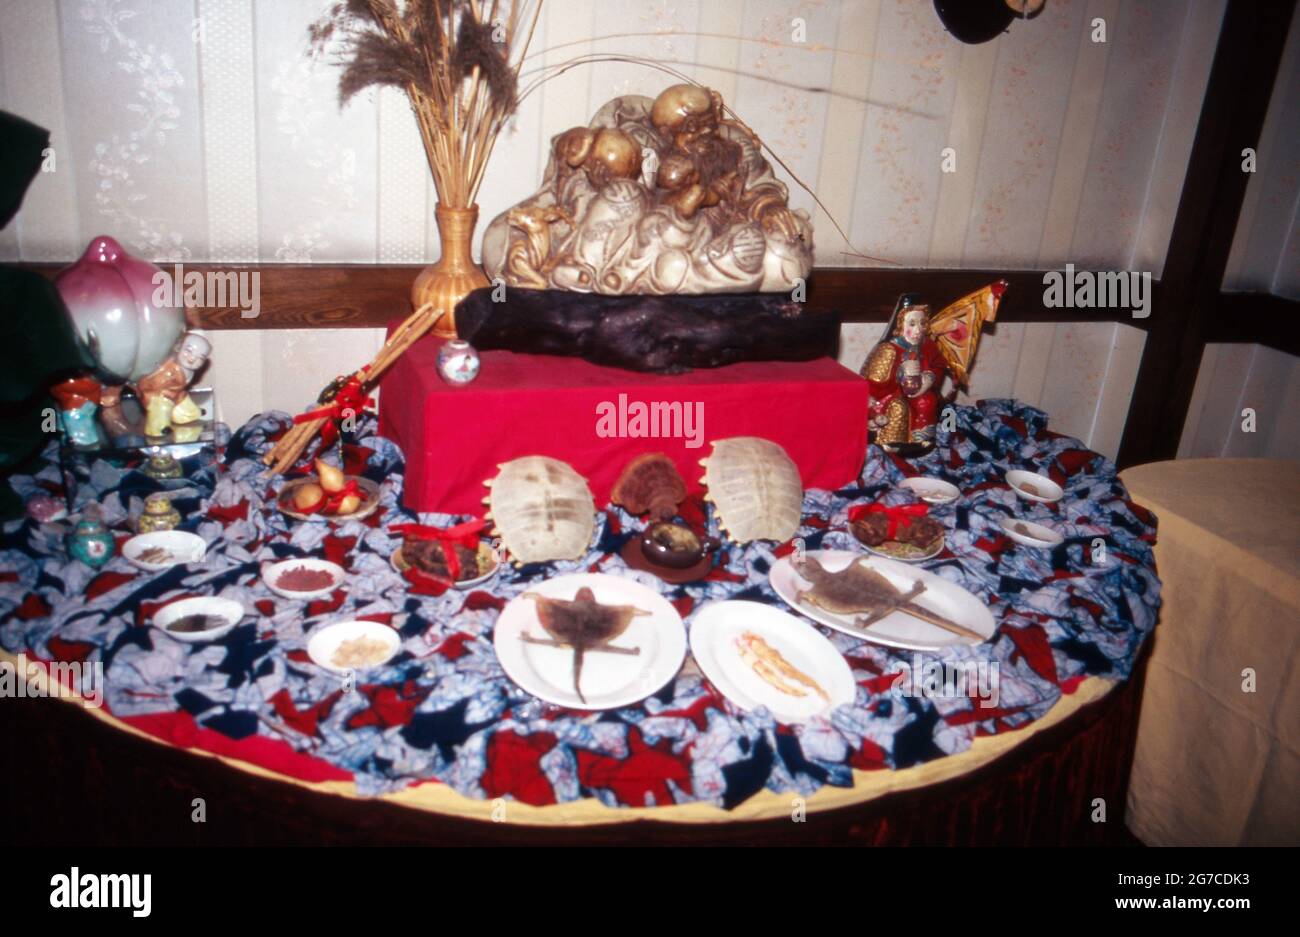 Schildkröte als Spezialität in einem landestypischen Restaurant in Peking, China 1998. Tortoise as a special dish in an original Chinese resaturant at Beijing, China 1998. Stock Photo